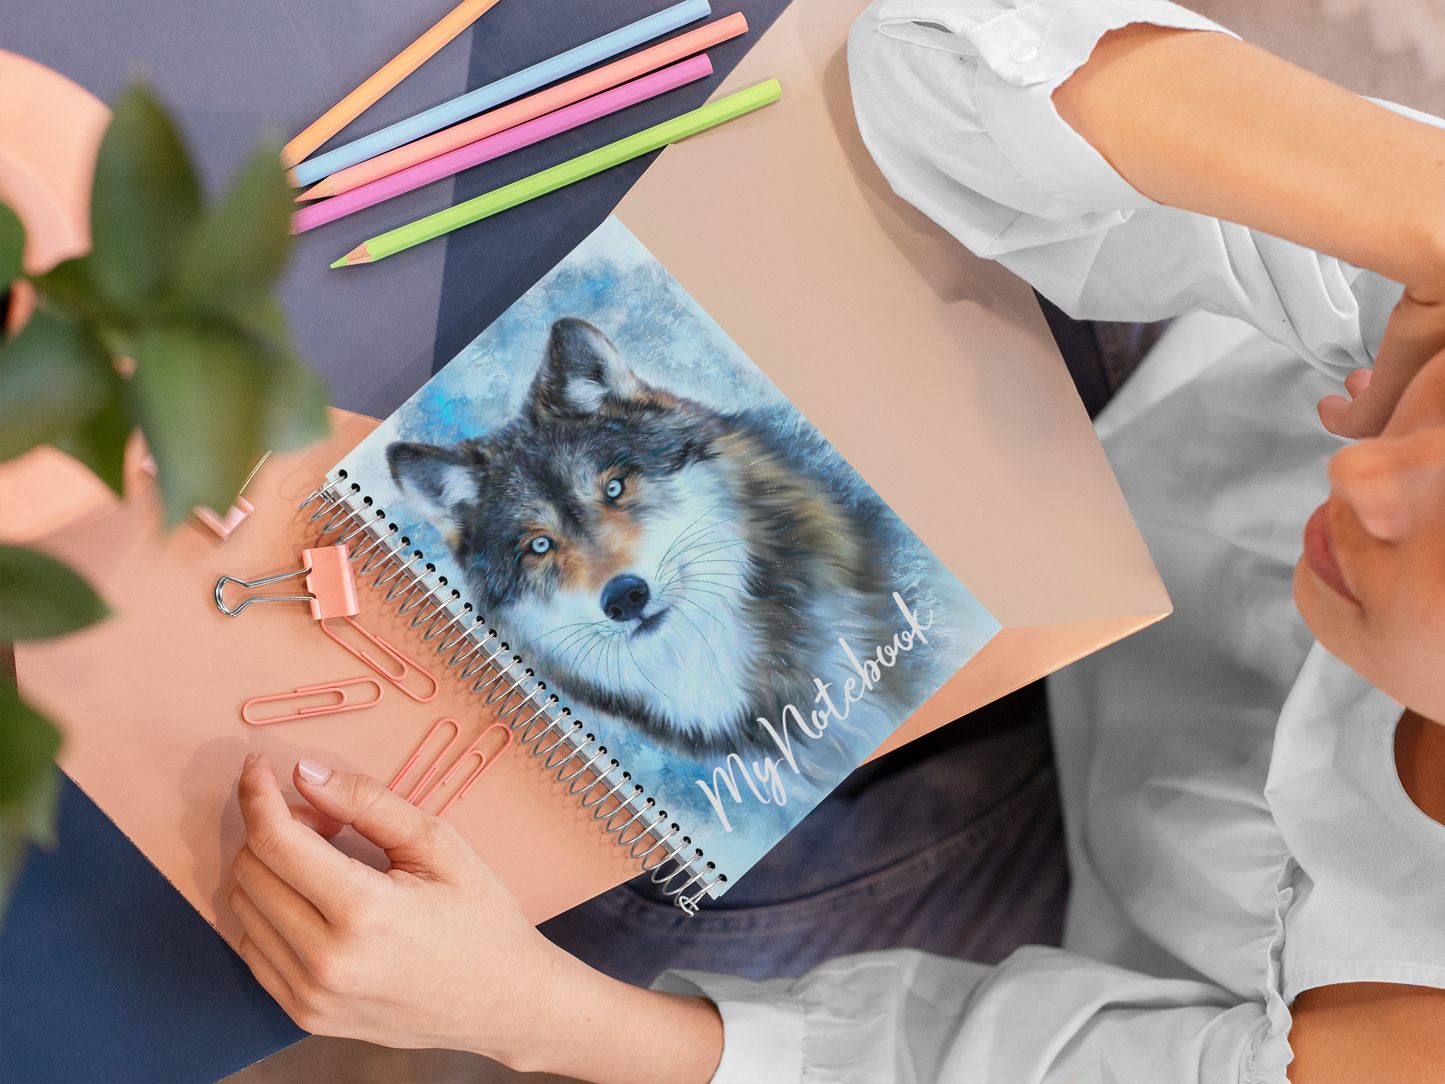 Wildlife Wild Animal Art Wolf Notebook Gift Idea